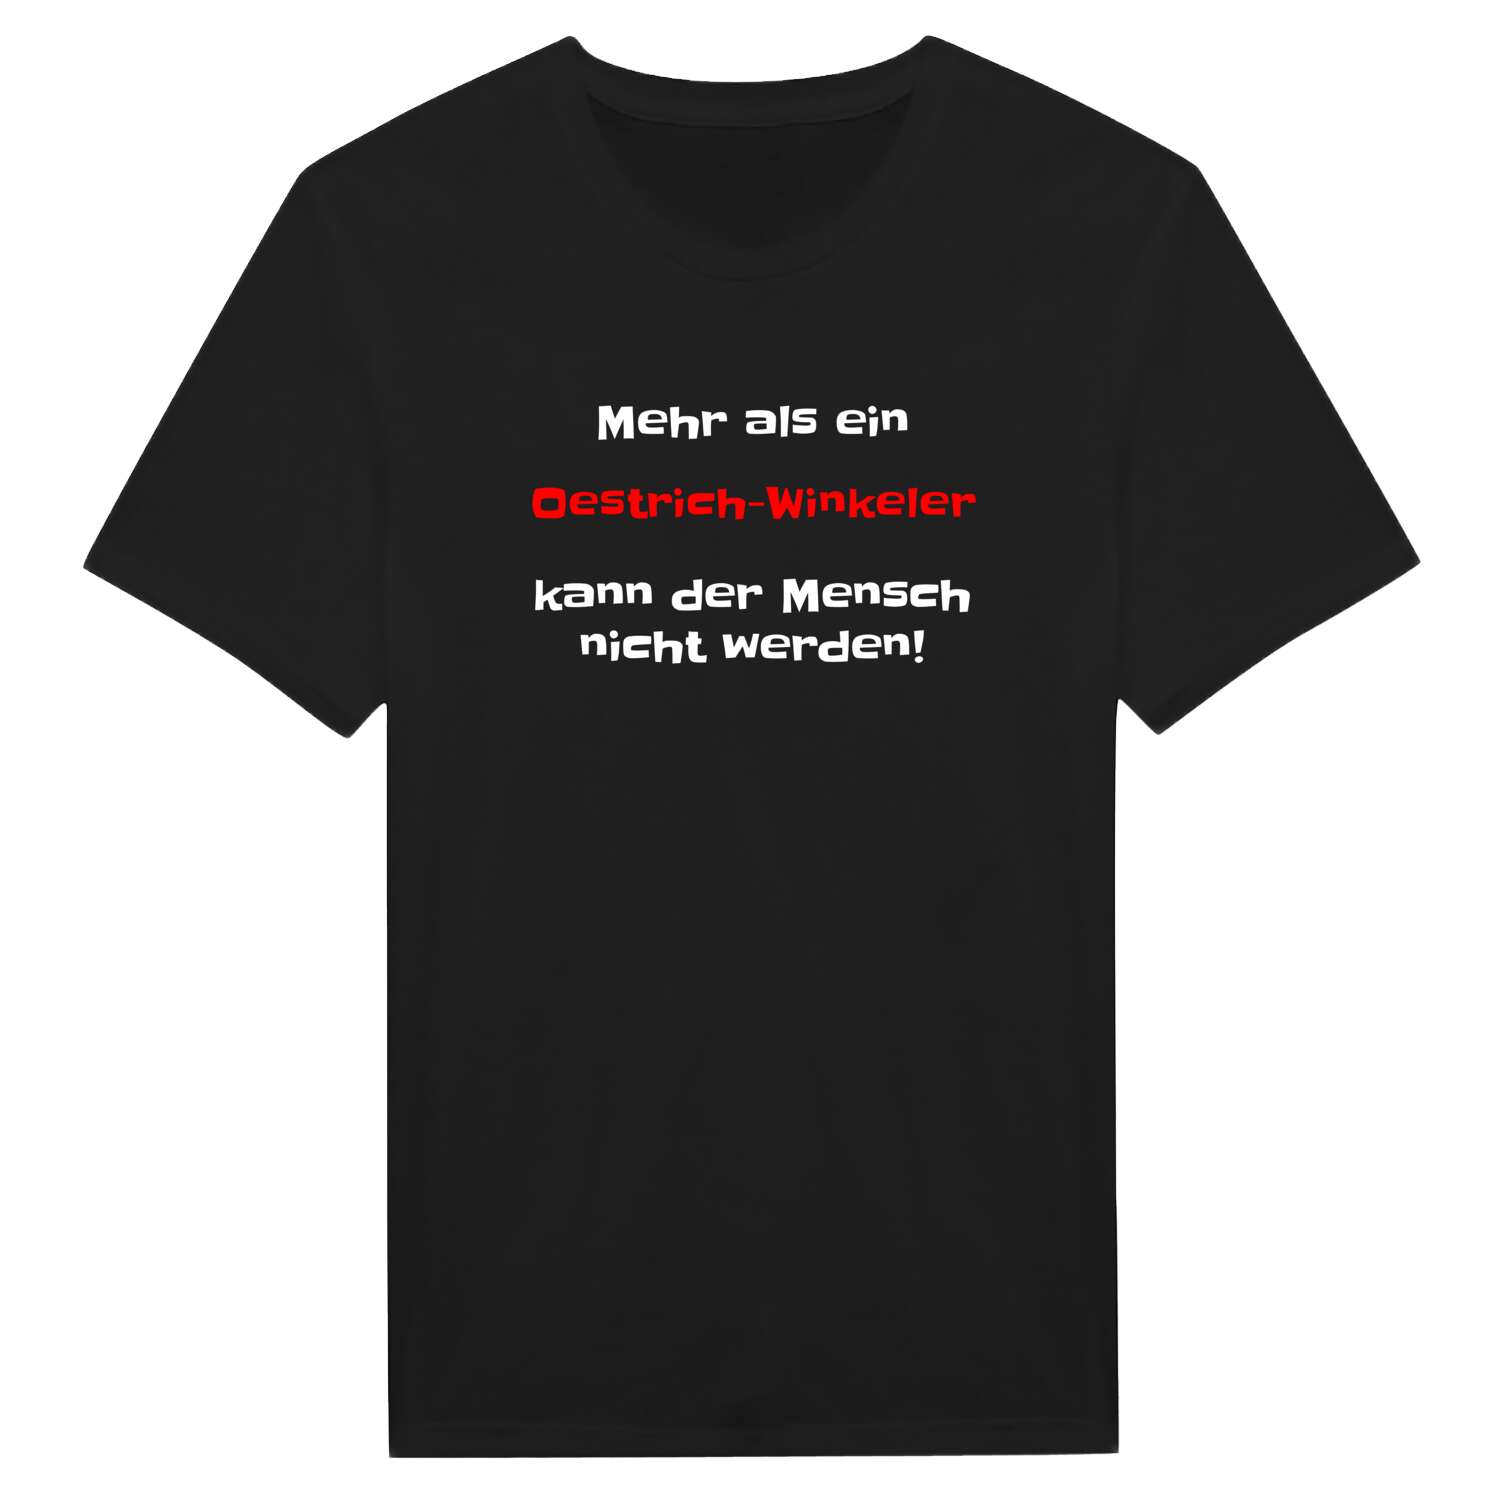 Oestrich-Winkel T-Shirt »Mehr als ein«